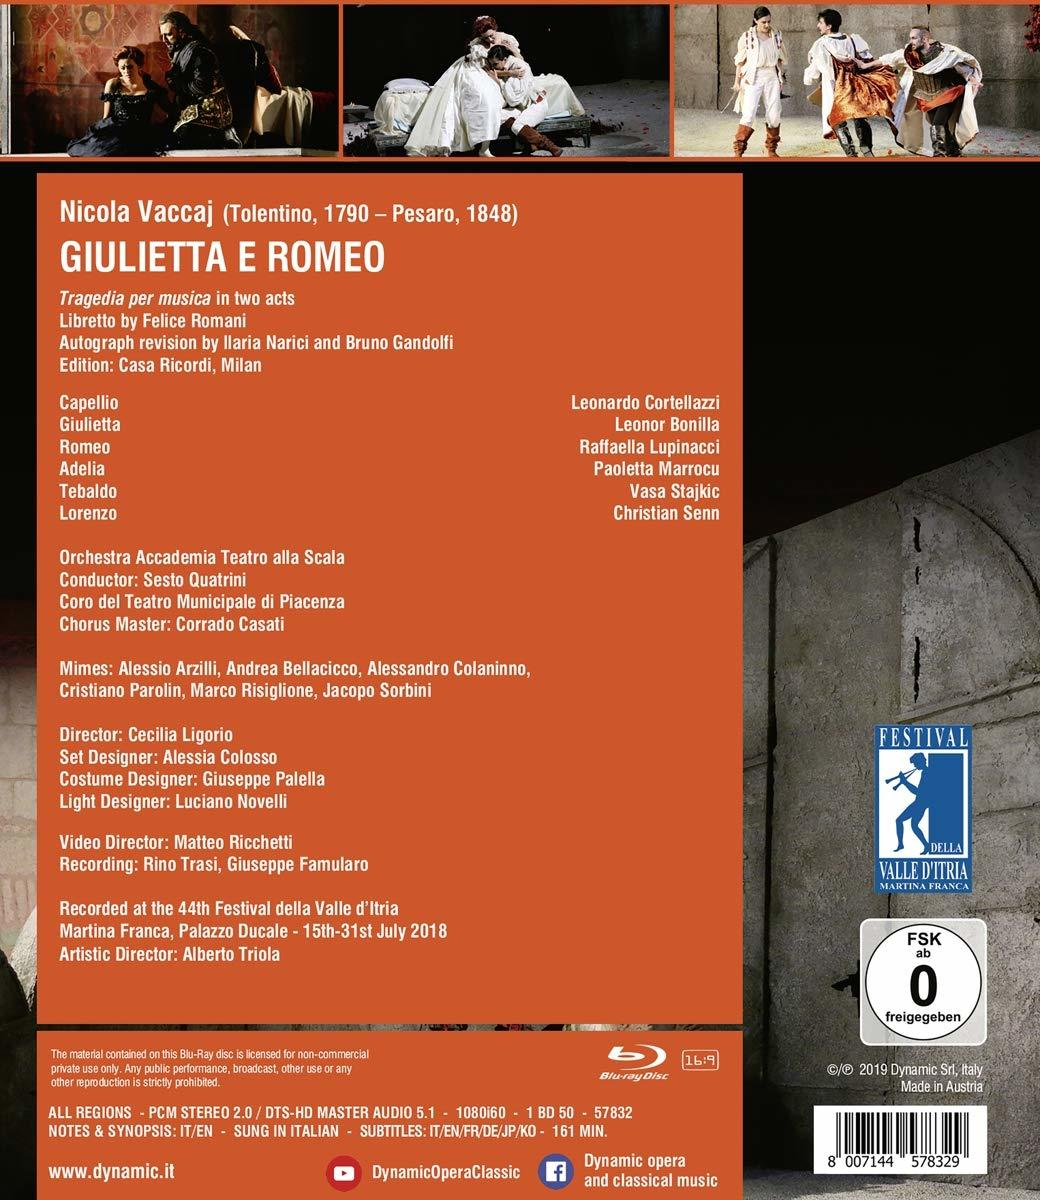 - - Scala, Teatro e Raffaella Alla Giulietta Romeo (Blu-ray) Accademia, Leonor Bonilla Lupinacci, Orchestra